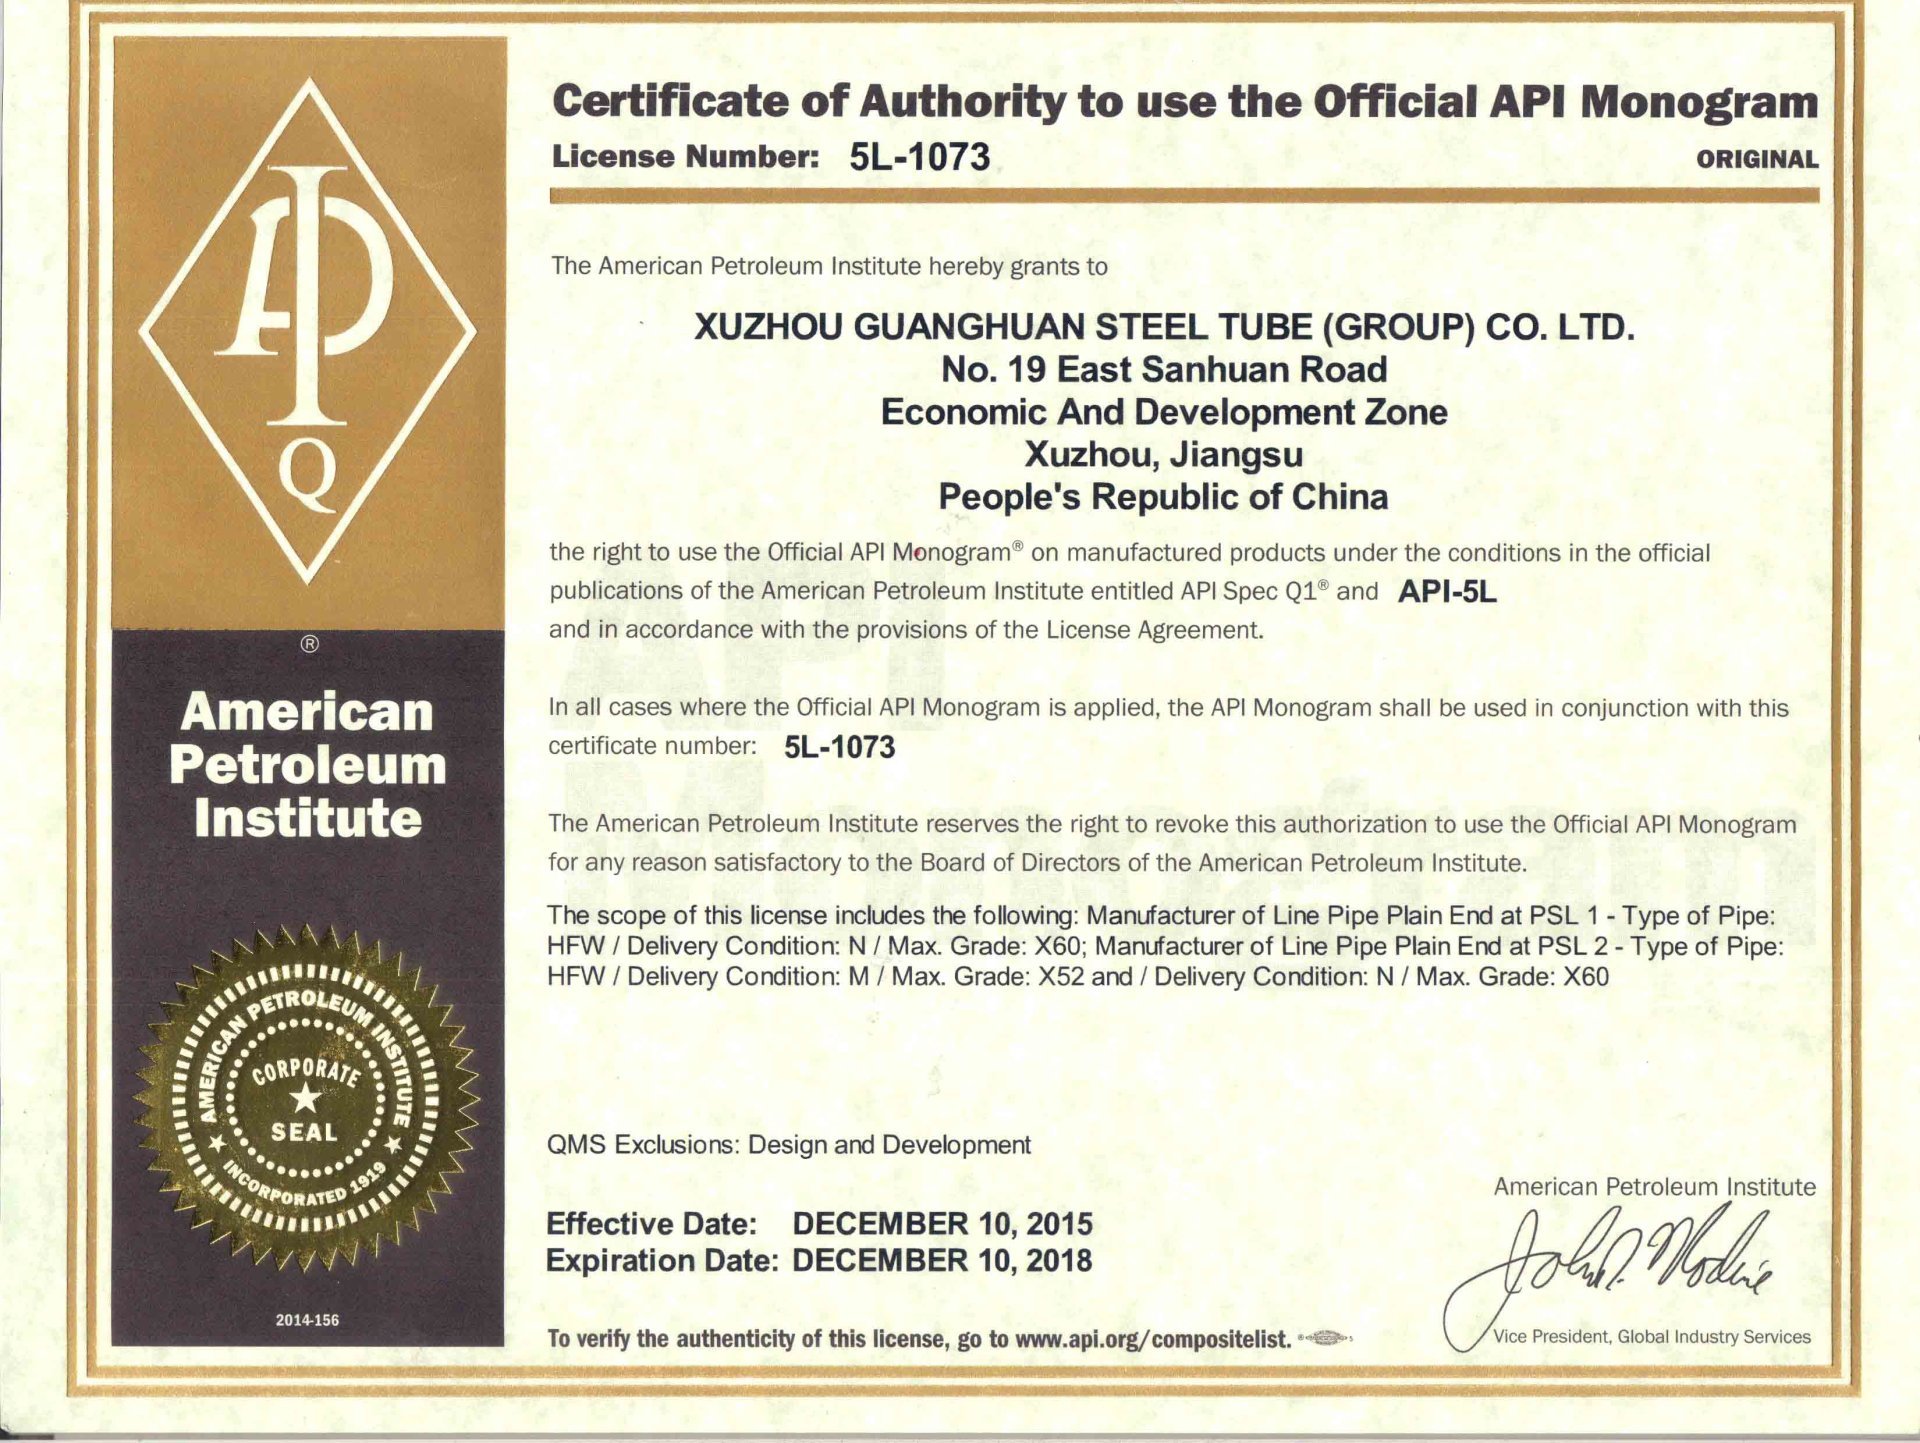  我公司顺利通过美国石油协会（API）新版认证